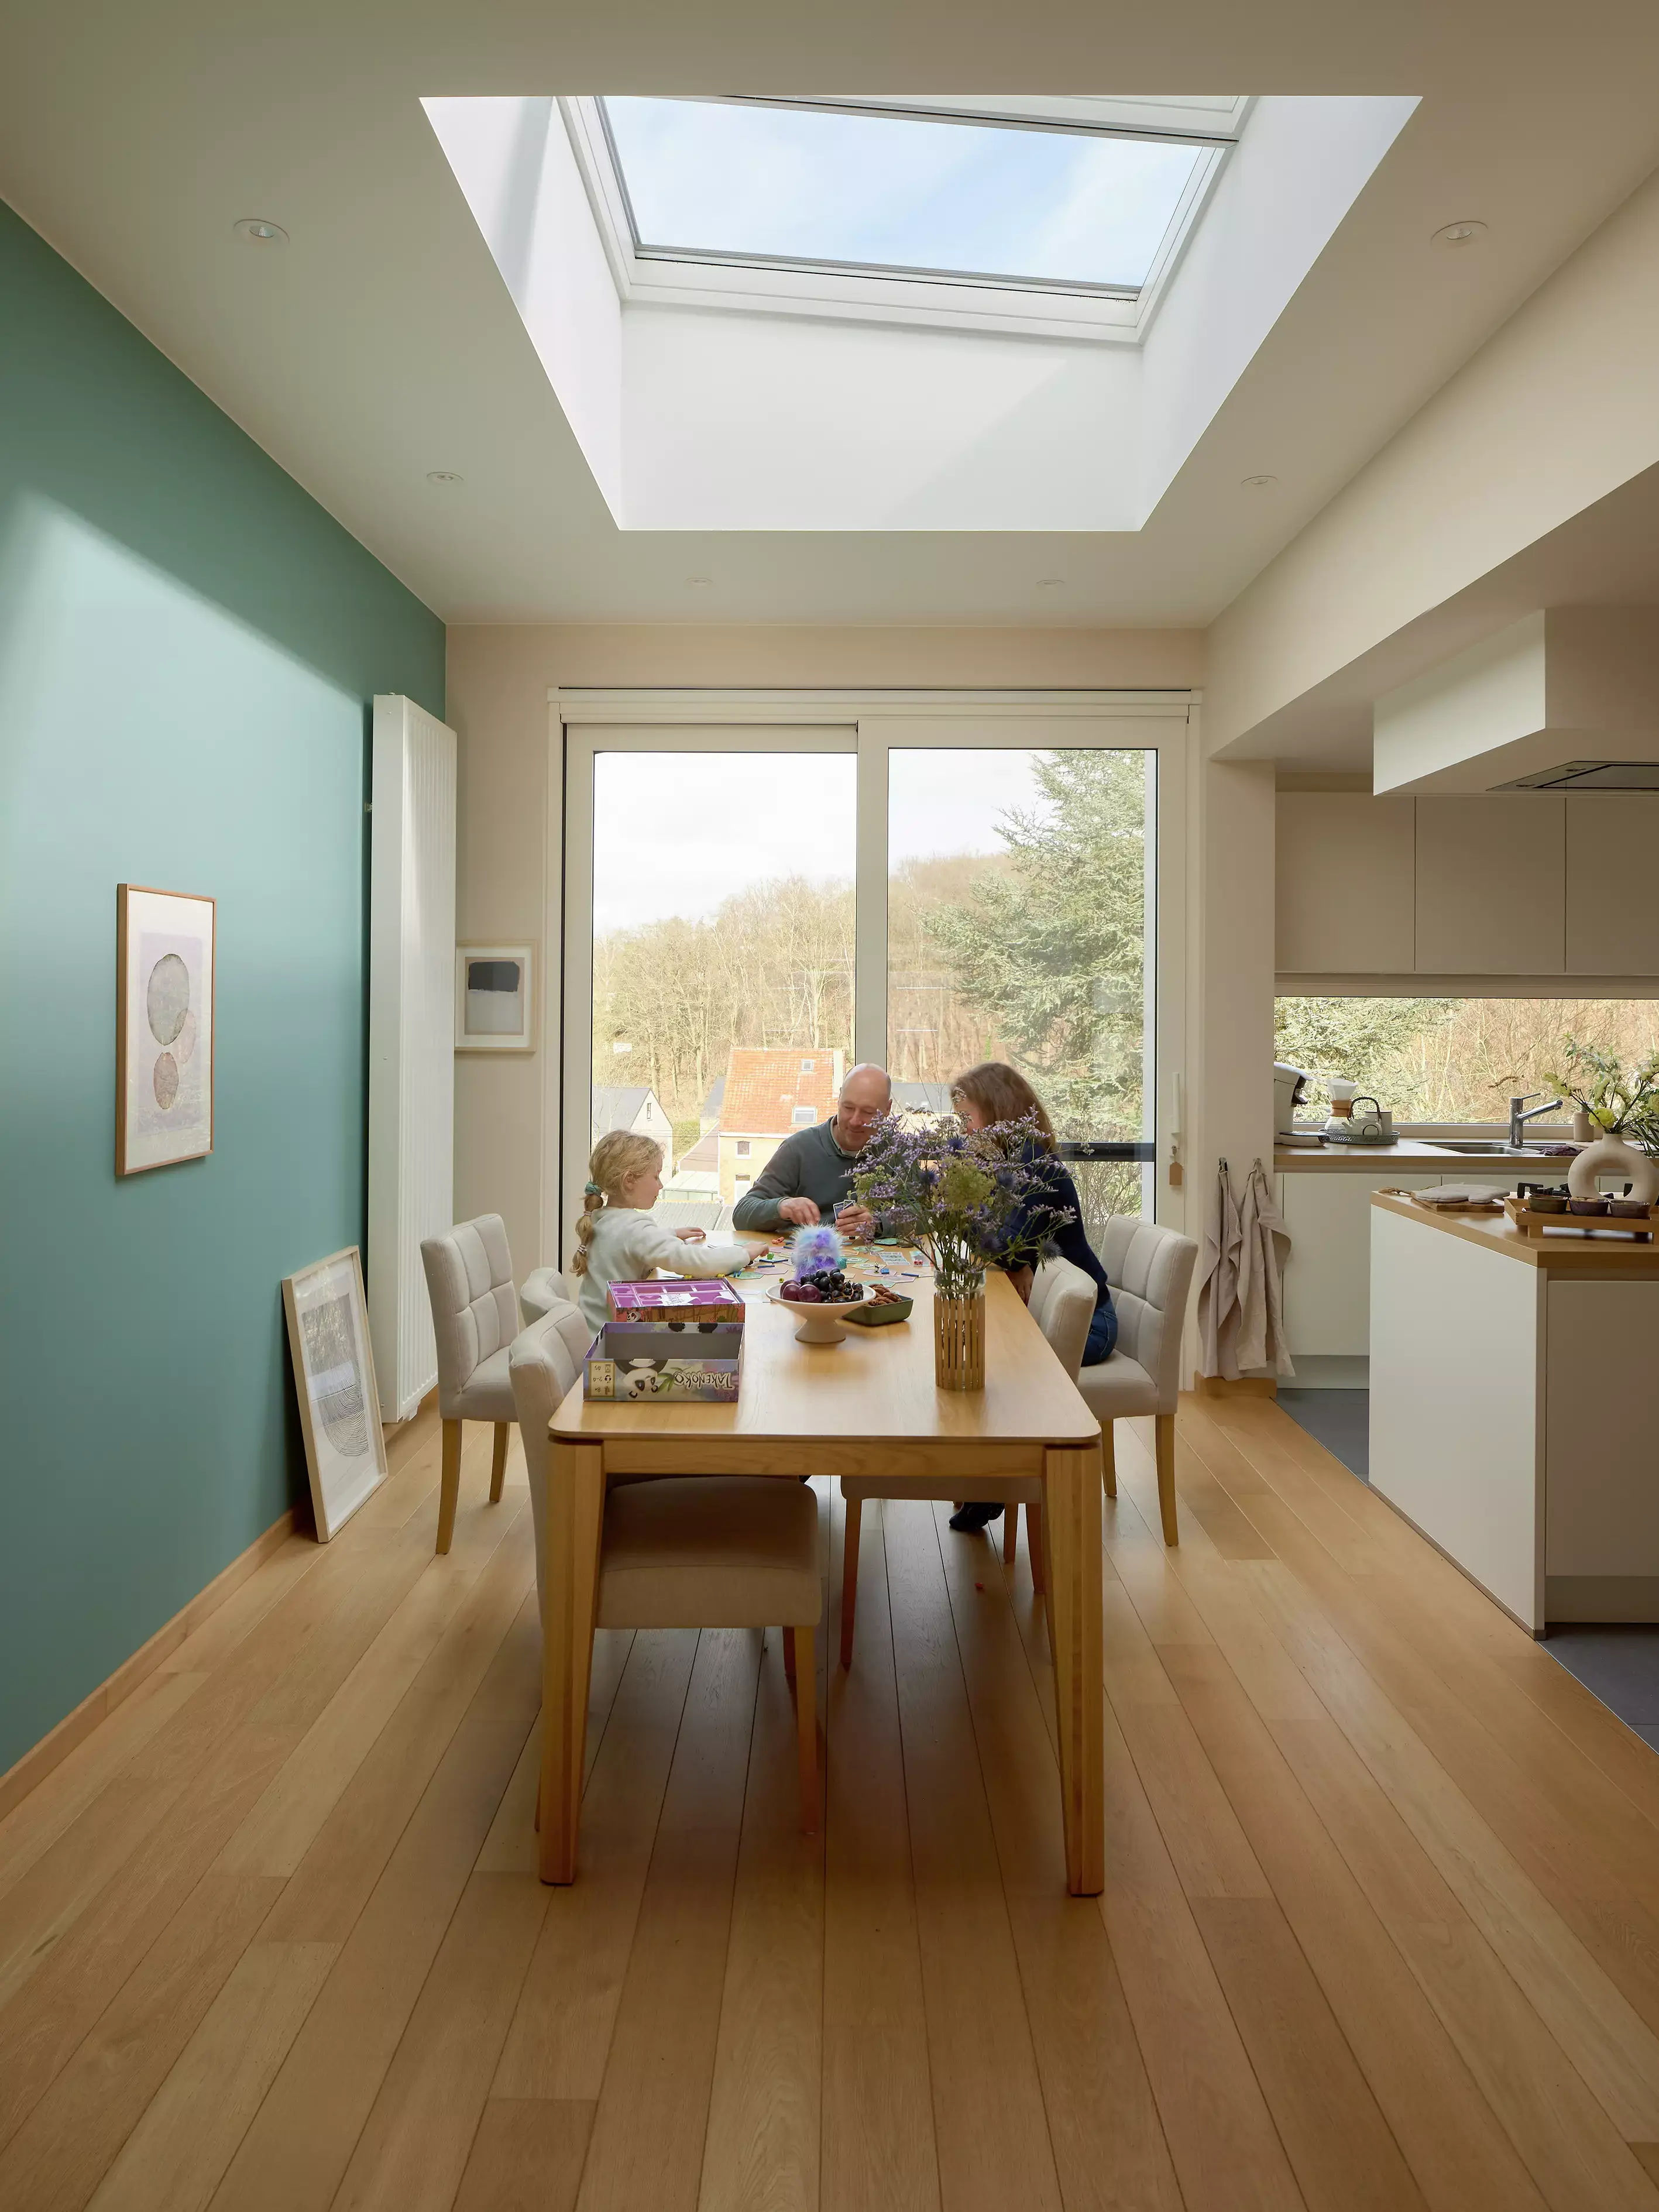 Espace salle à manger ouvert avec lumière naturelle provenant d'une fenêtre de toit VELUX, table en bois et cuisine ouverte.